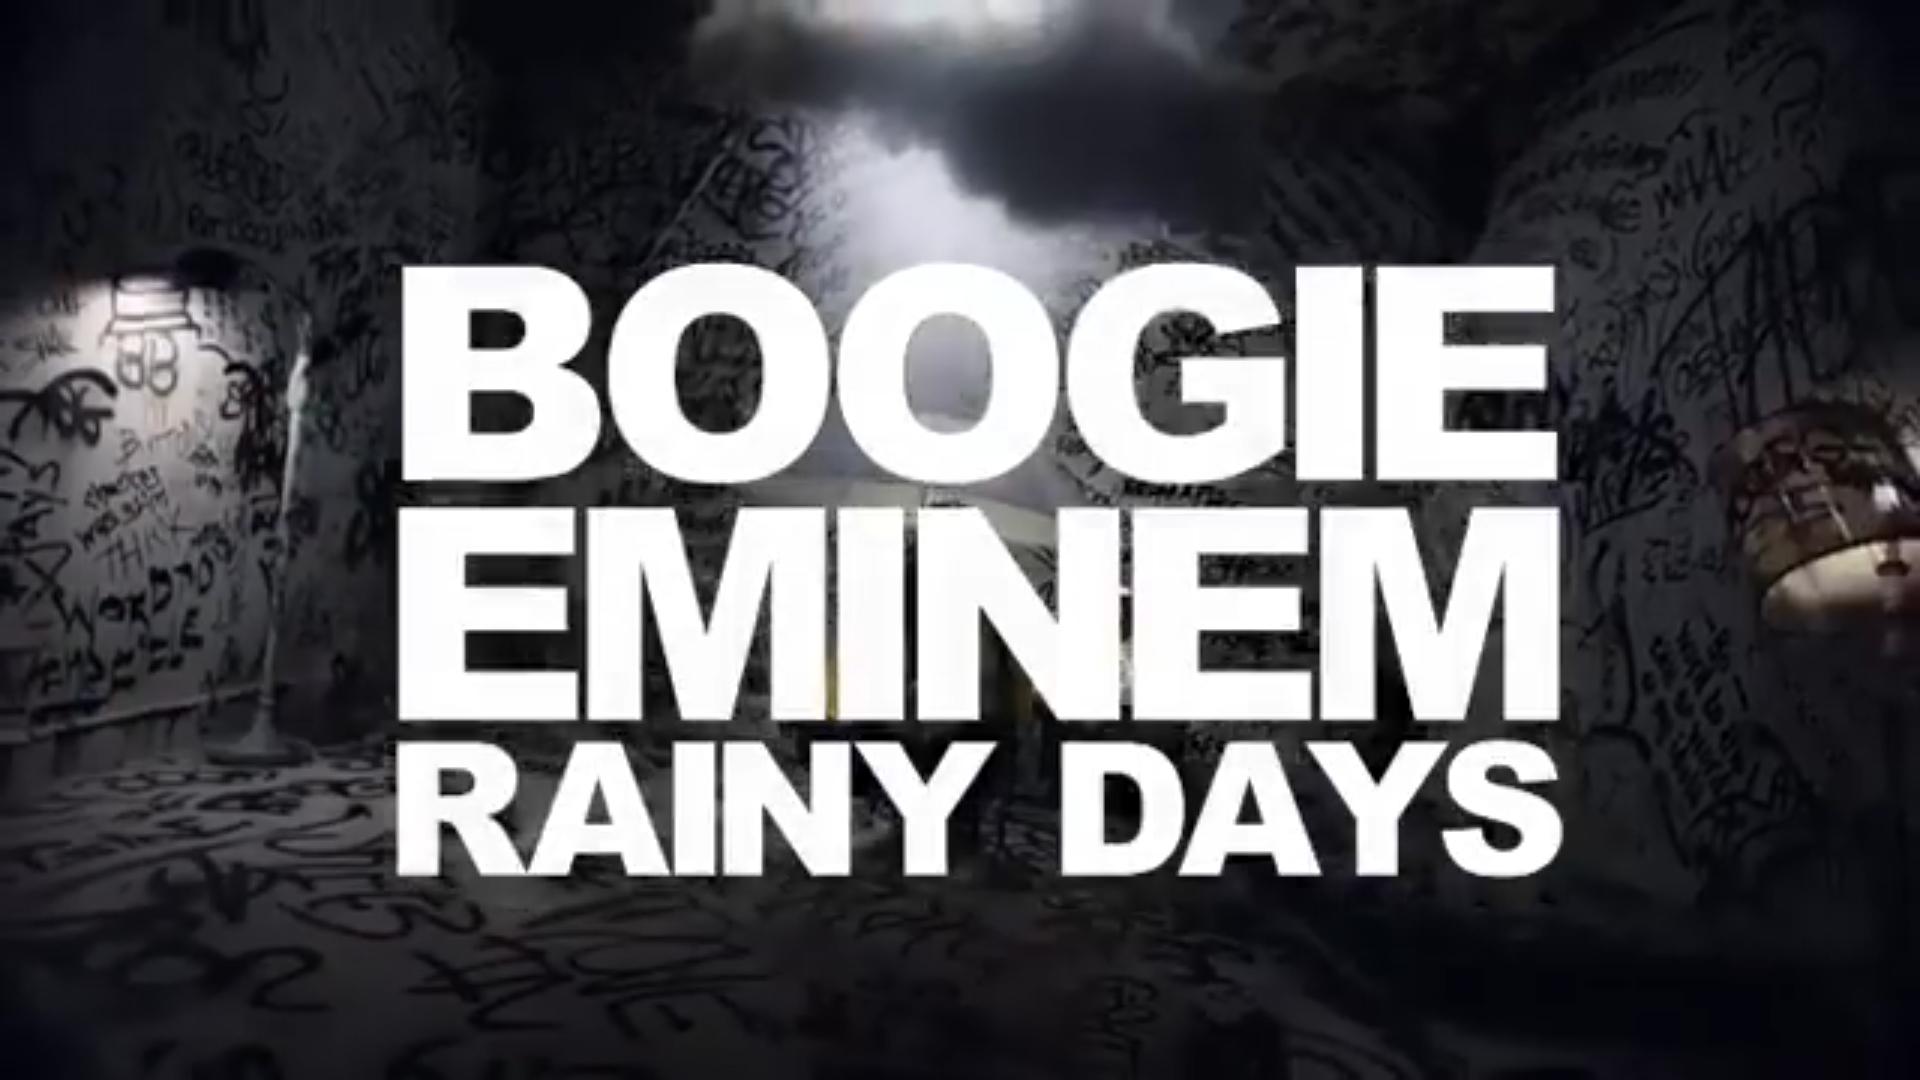 Boogie - Rainy Days (feat. Eminem) Lyrics